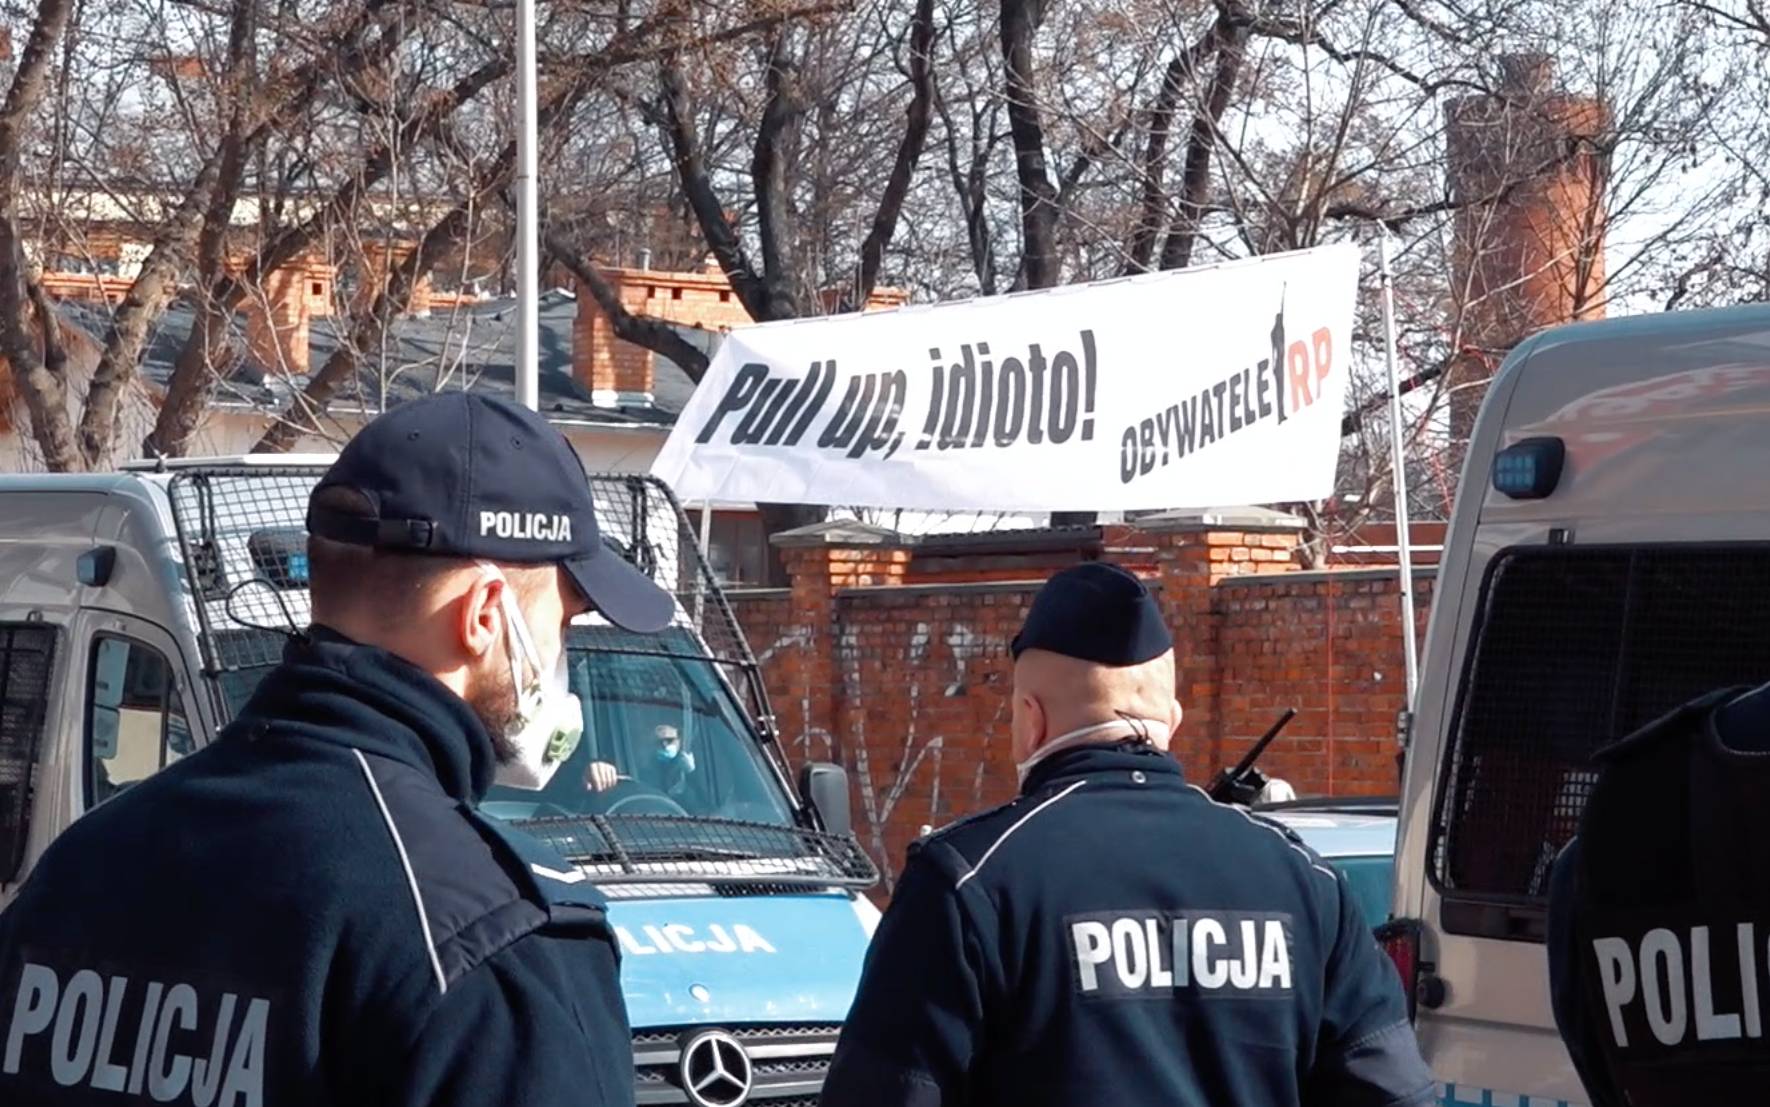 Grafika do artykułu Demonstracja pod siedzibą PiS w maseczkach i z transparentem „Pull up, idioto!”